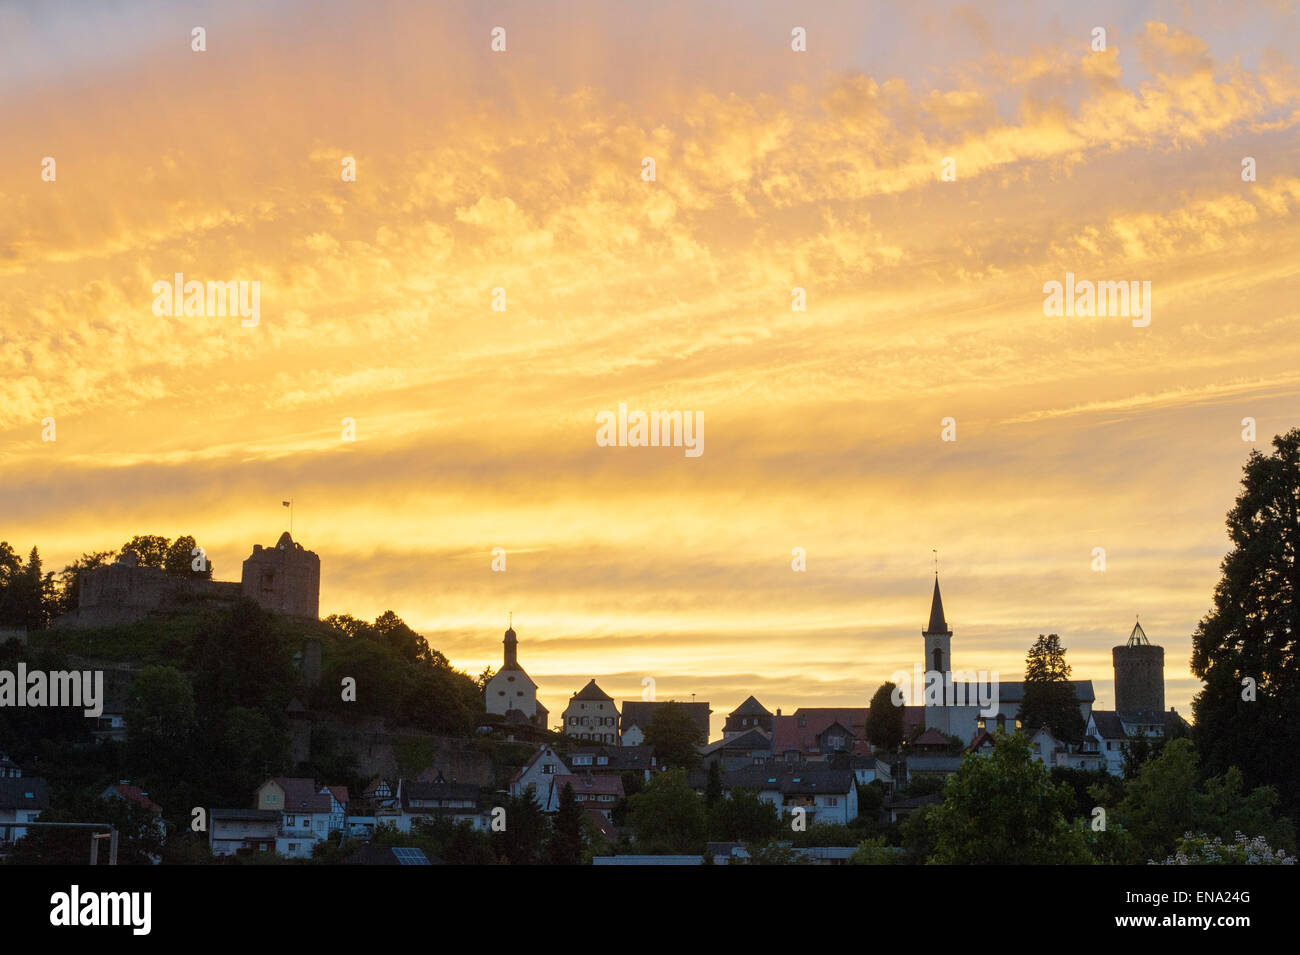 Abendhimmel über Lindenfels, Odenwald, Hessen, Deutschland | Evening sky over Lindenfels, Odenwald, Hesse, Germany Stock Photo